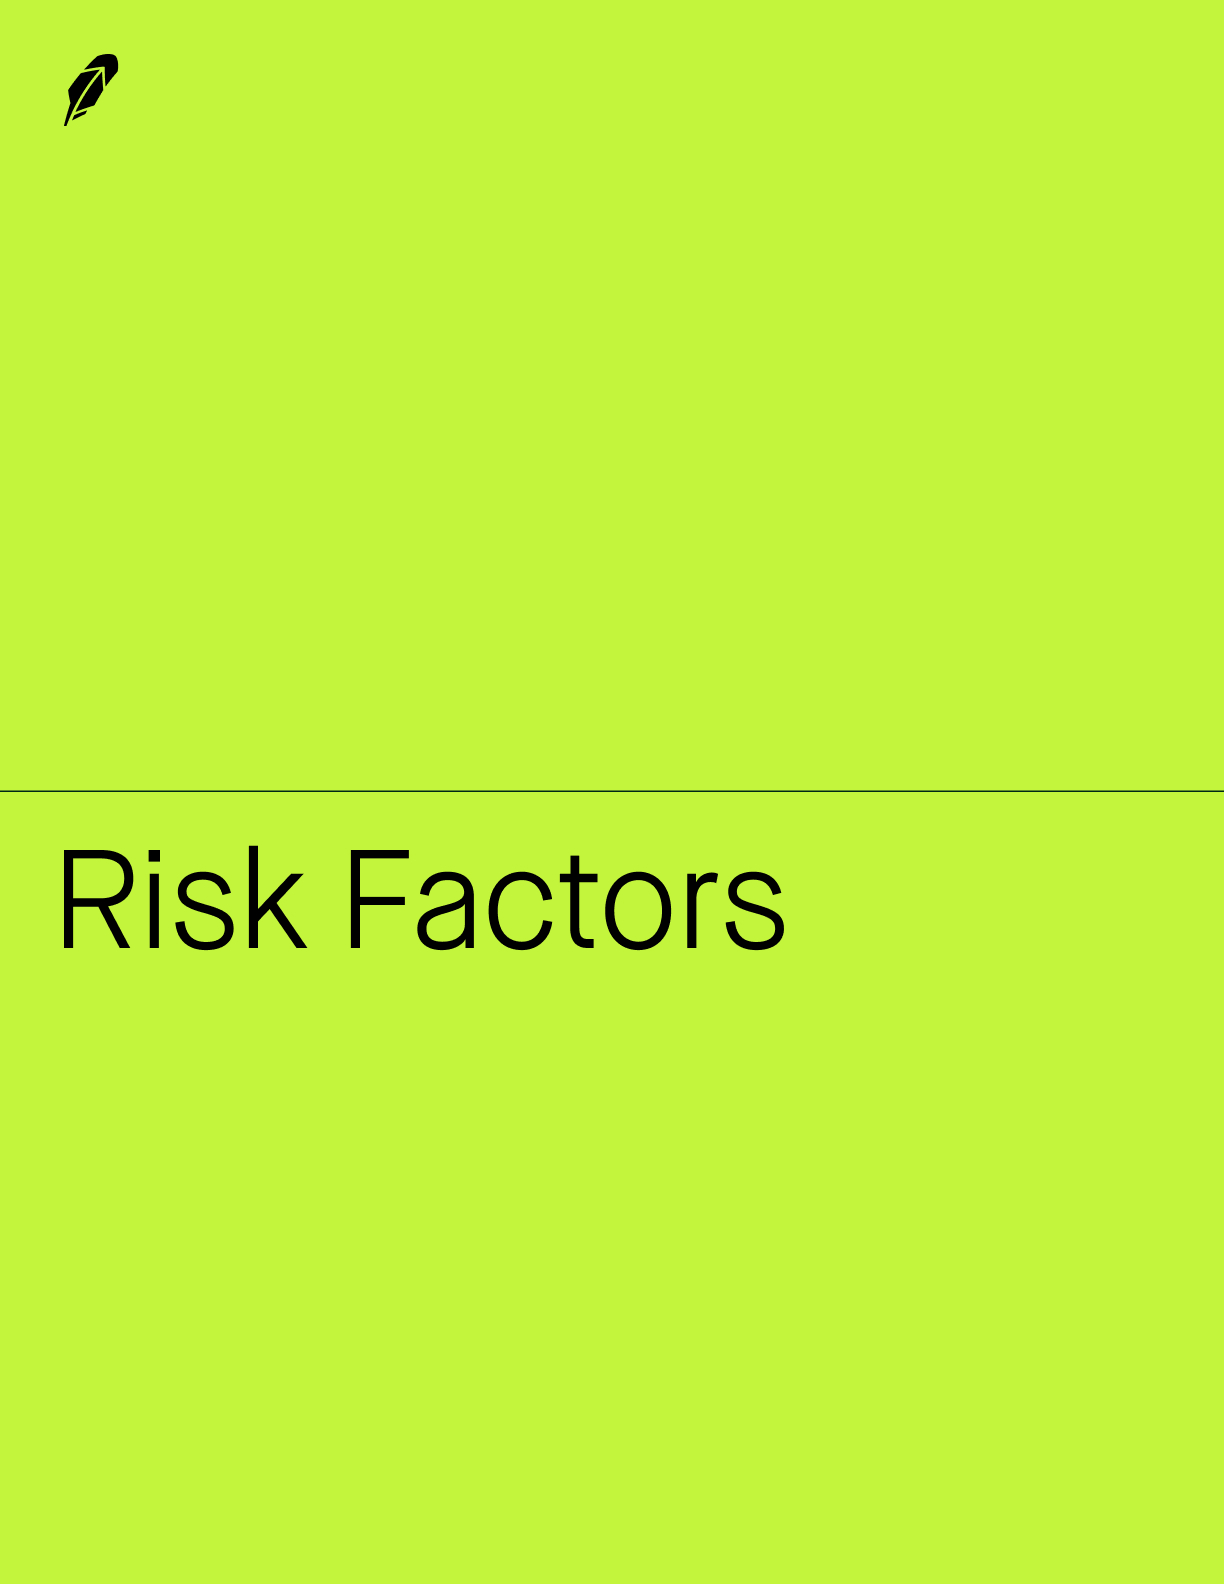 riskfactors1b1.jpg